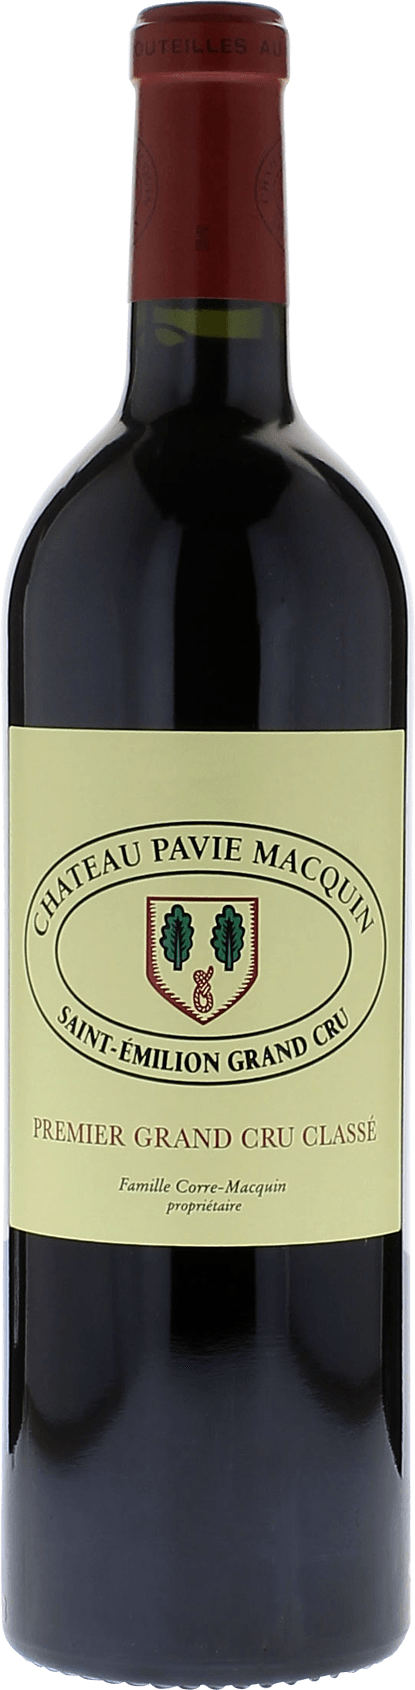 Pavie macquin 2016  Saint-Emilion, Bordeaux rouge